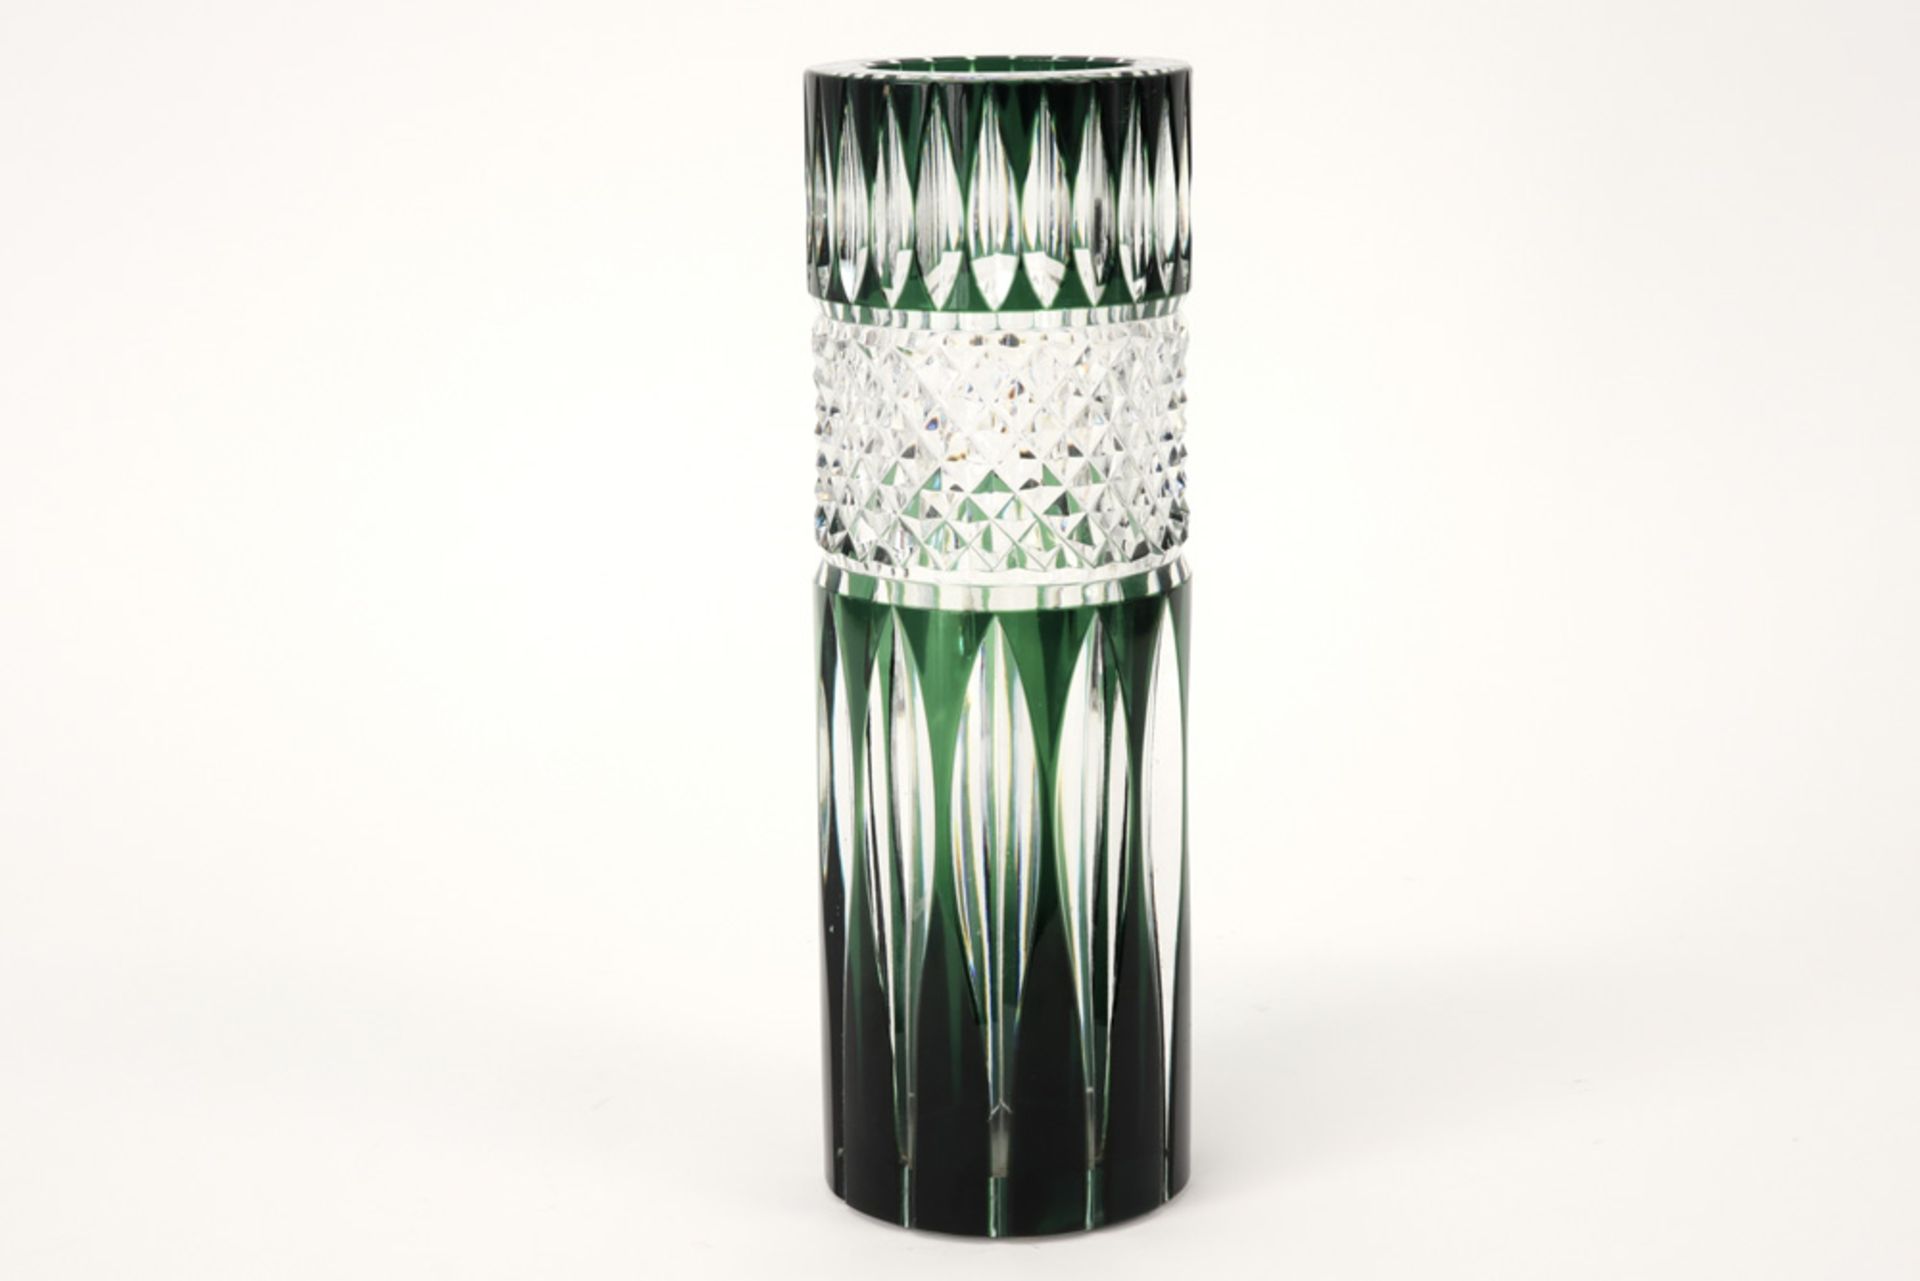 Belgian vase in VSL crystal ||Vaas met model "Altena" in kristal Val-St-Lambert - hoogte : 27,2 cm